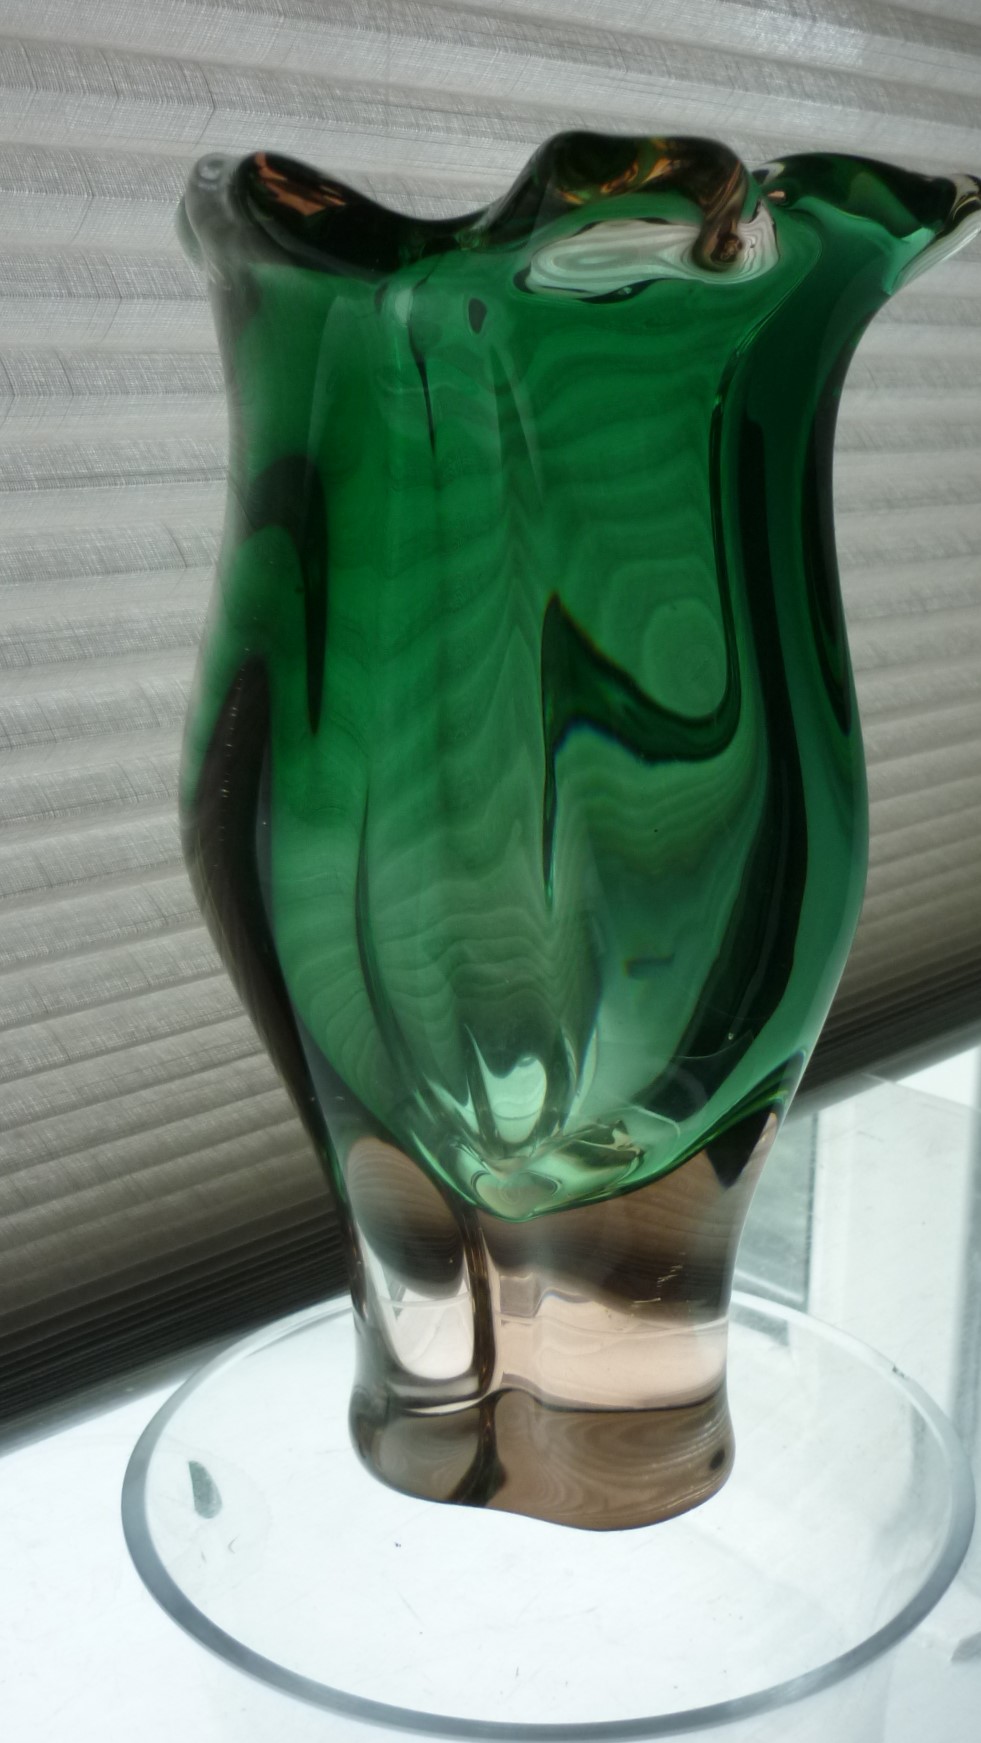 1960s Czech glass designed by Joseph Hospodka for the Chribska glassworks. 